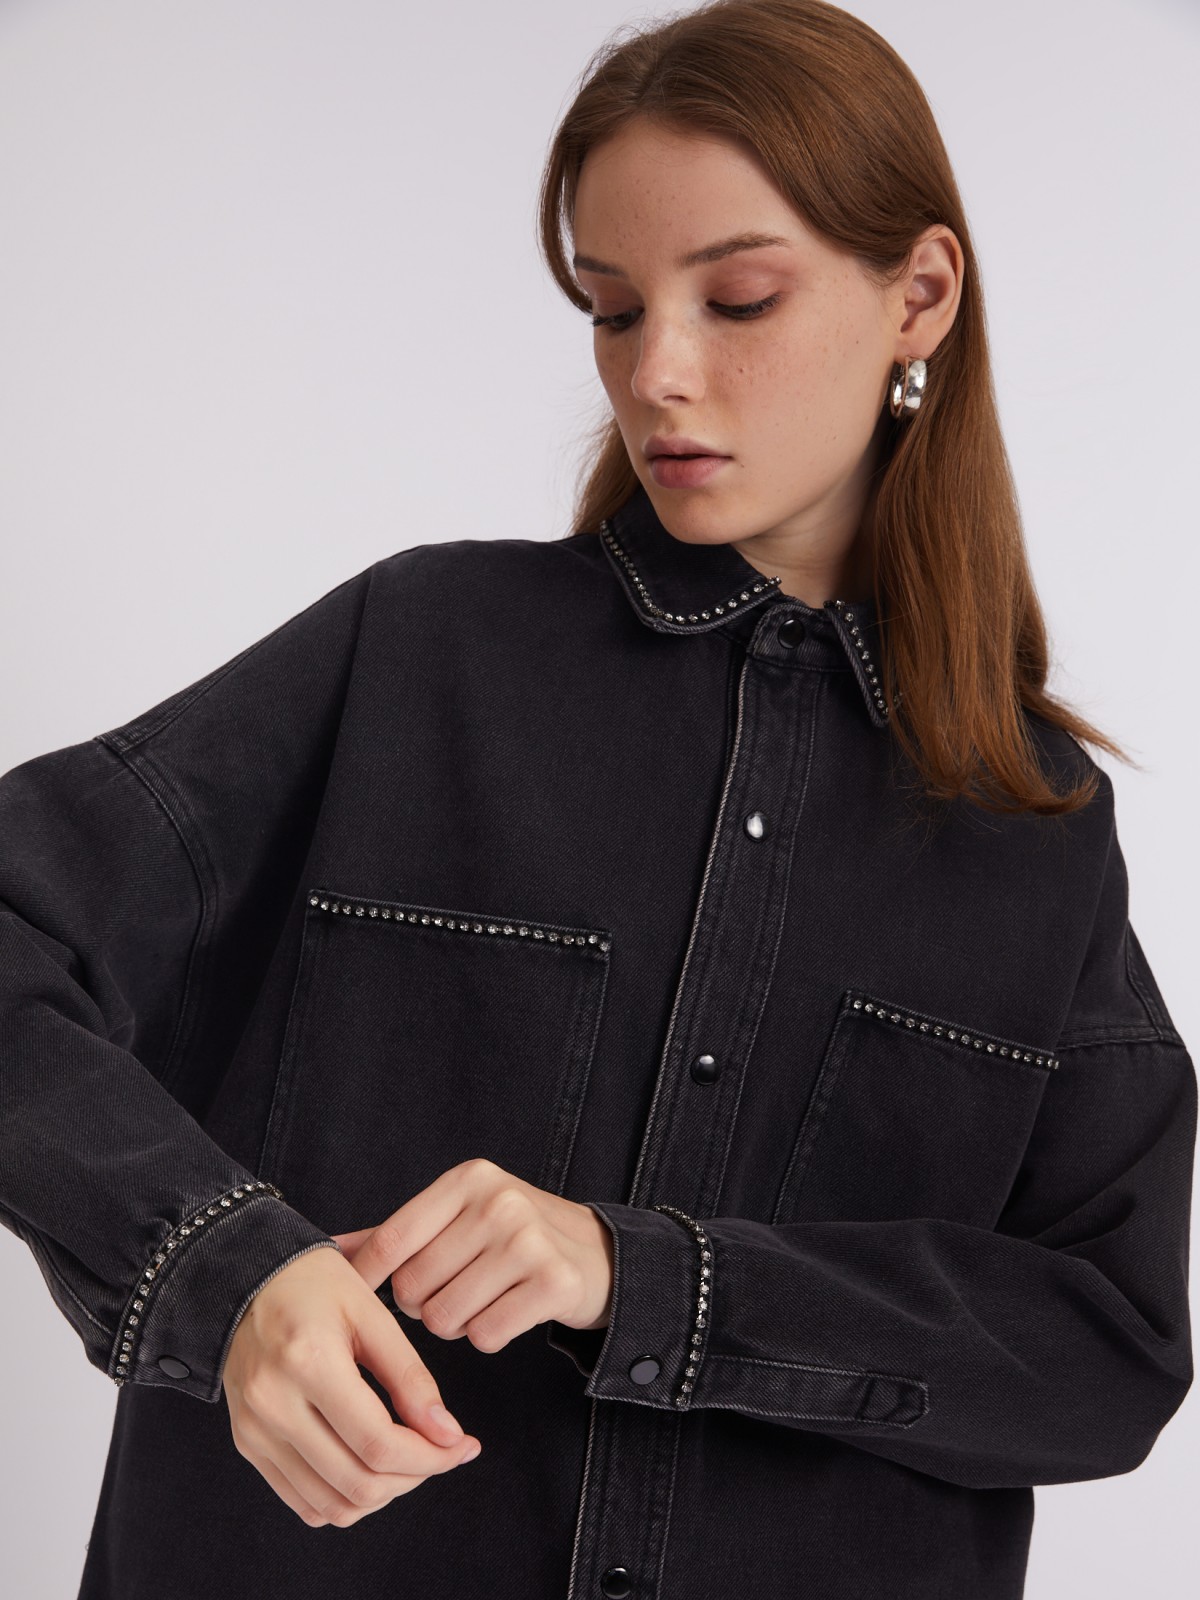 Джинсовая куртка-рубашка оверсайз силуэта со стразами zolla 023315D1G021, цвет черный, размер XXS - фото 5